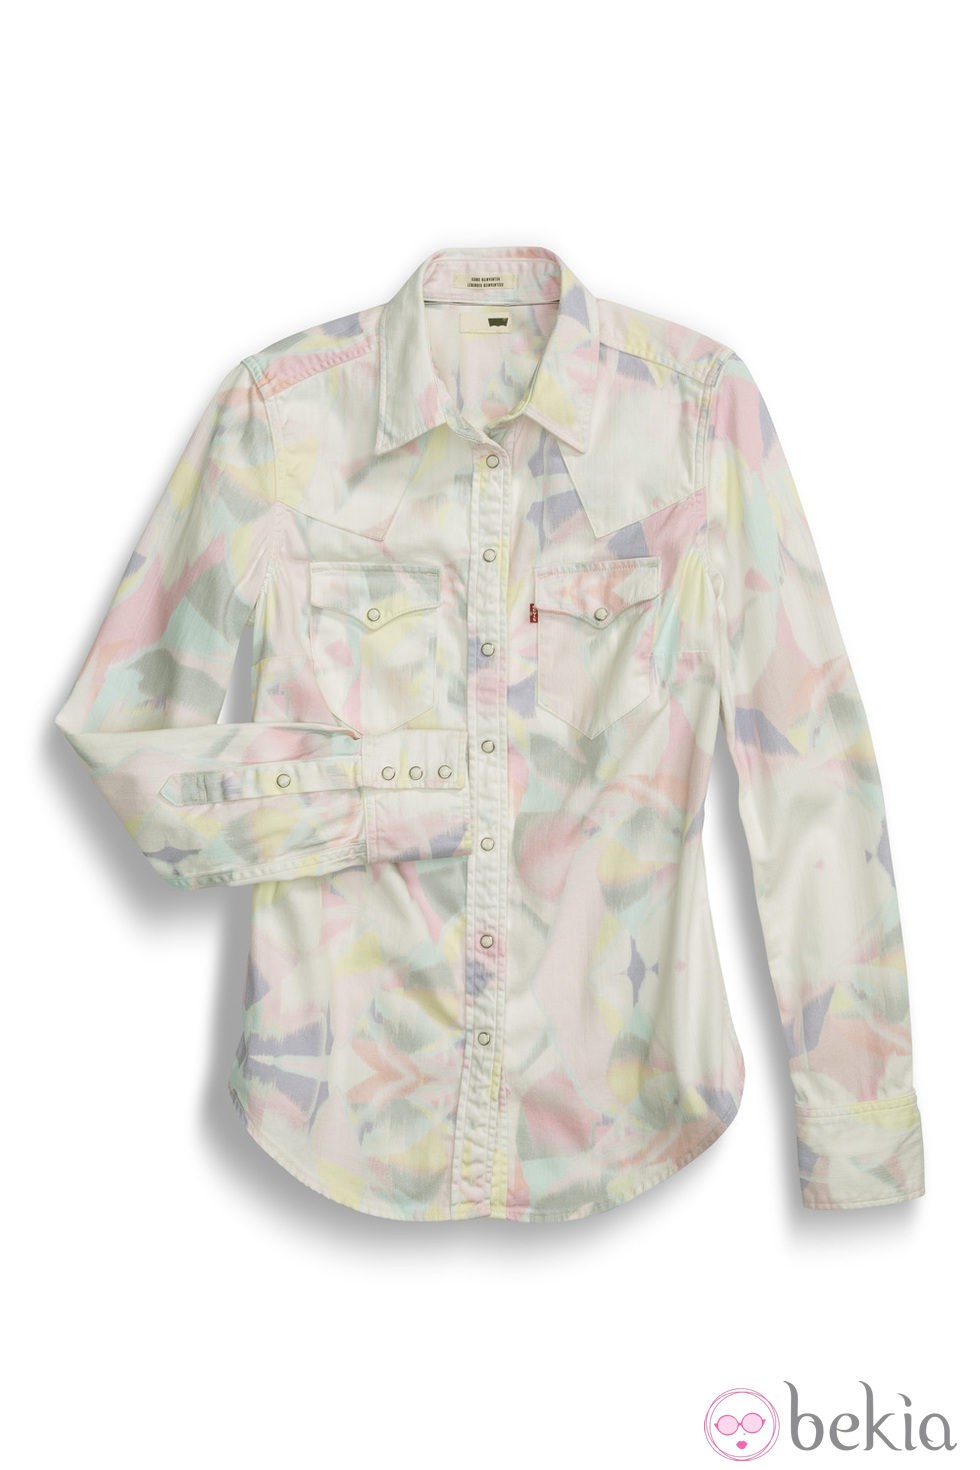 Camisa denim con estampado pixelado de la colección primavera/verano 2014 de Levi's